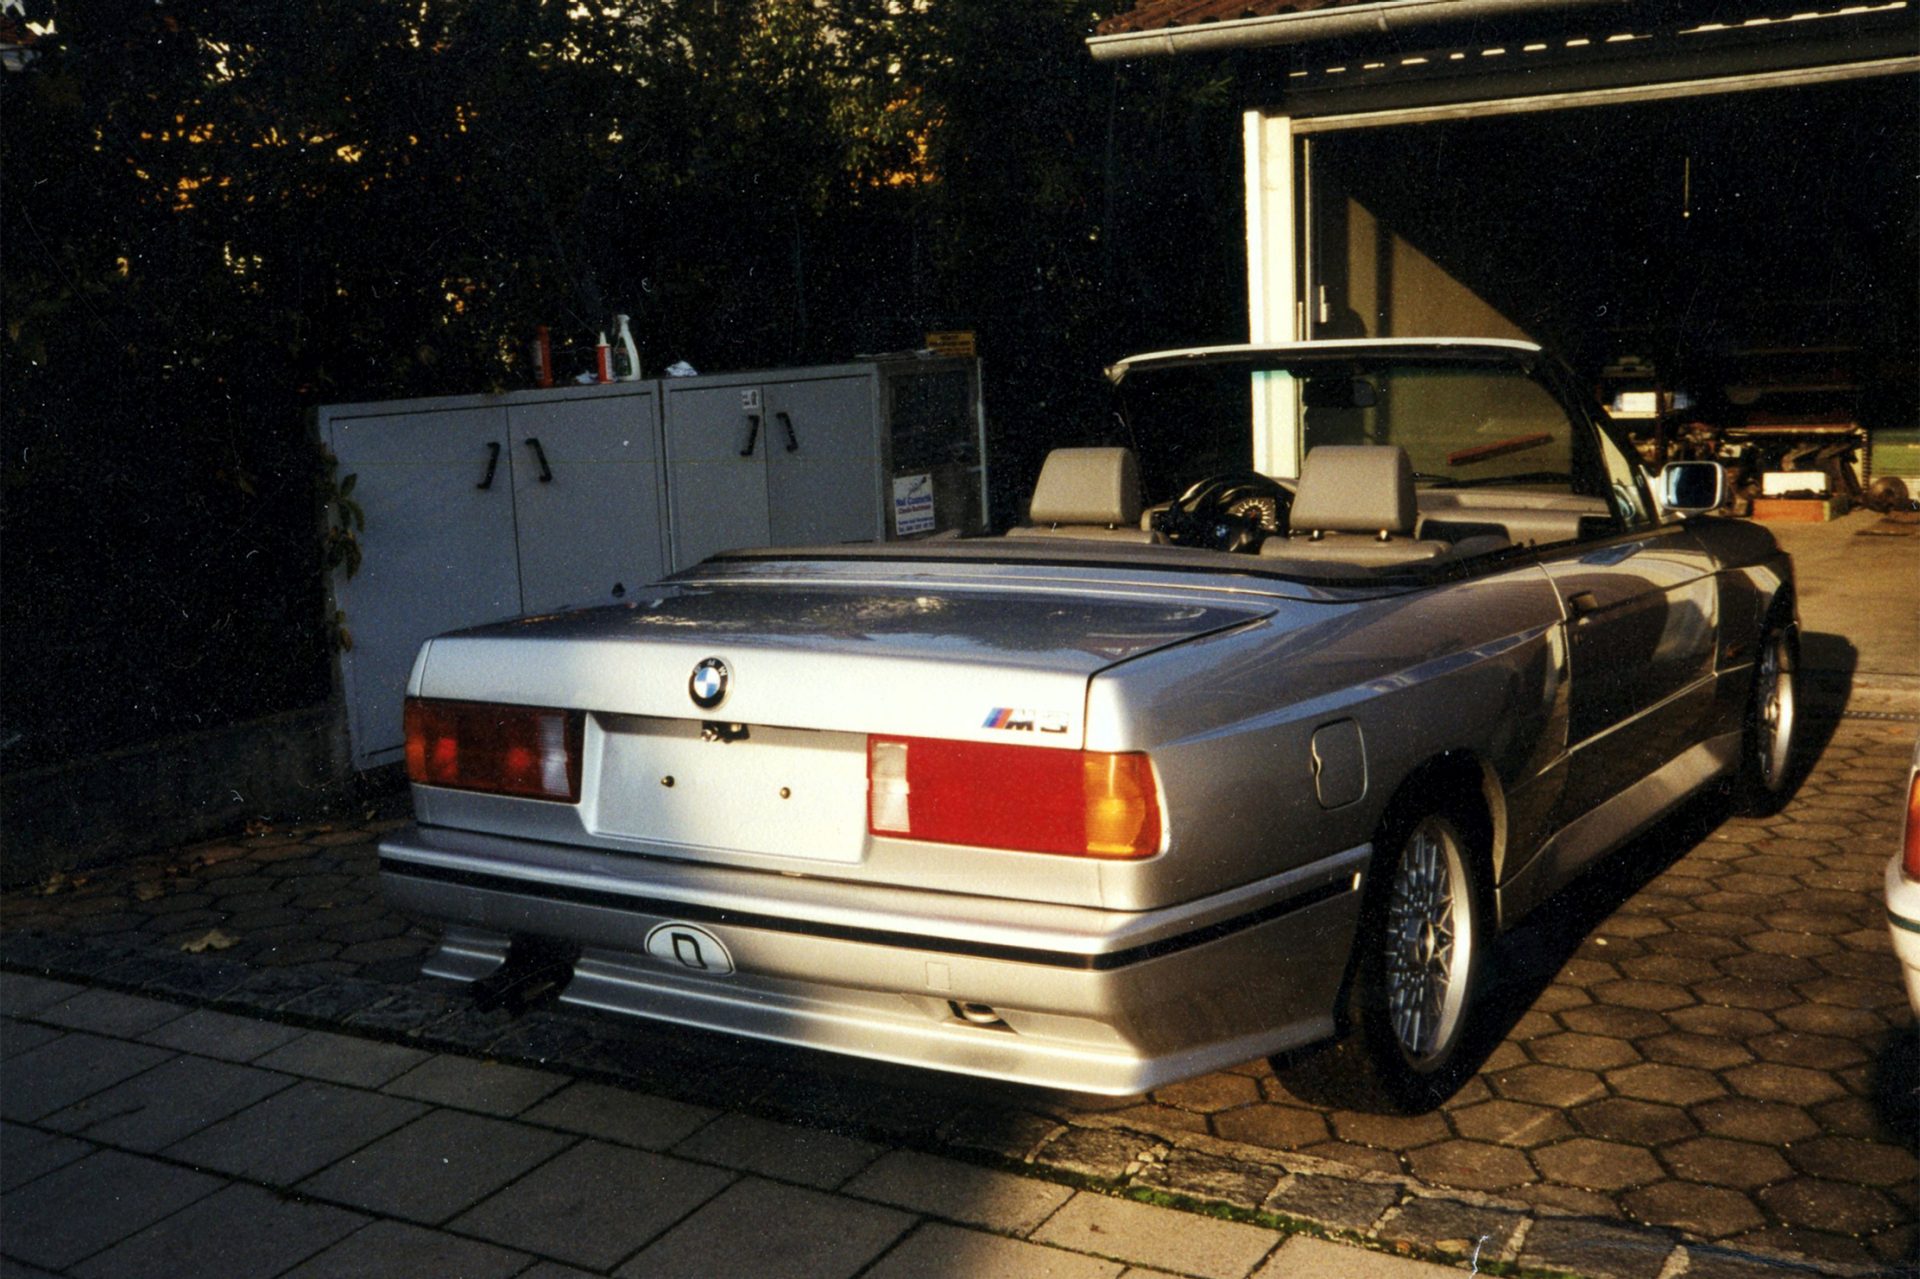 BMW M3 rear view